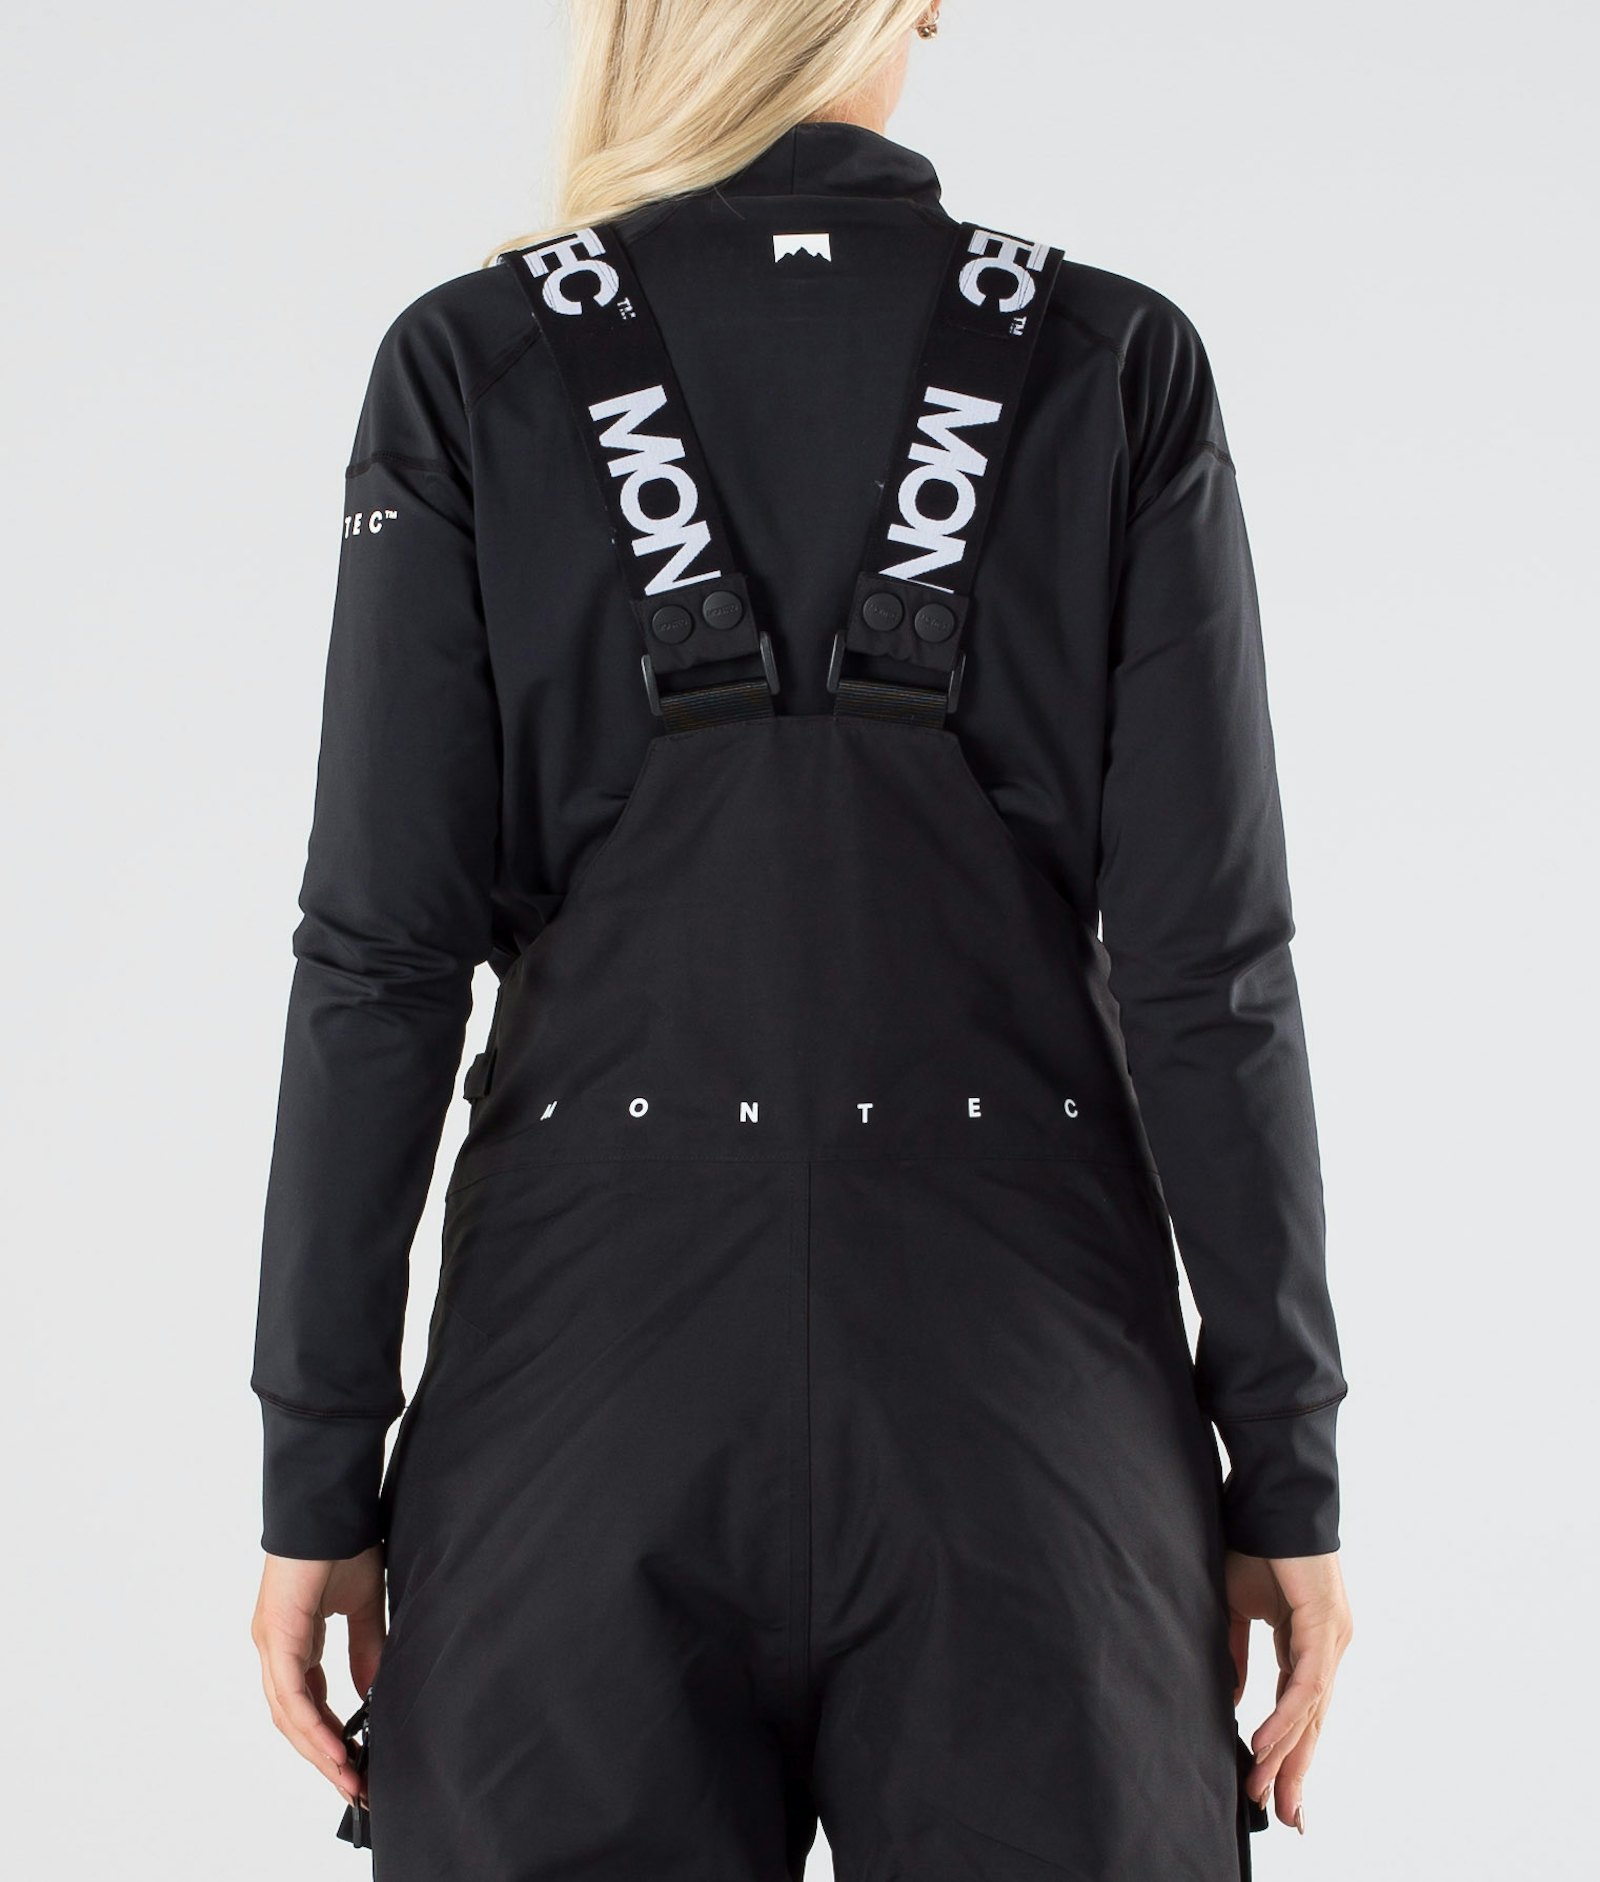 Montec Fawk W 2019 Pantalon de Snowboard Femme Black